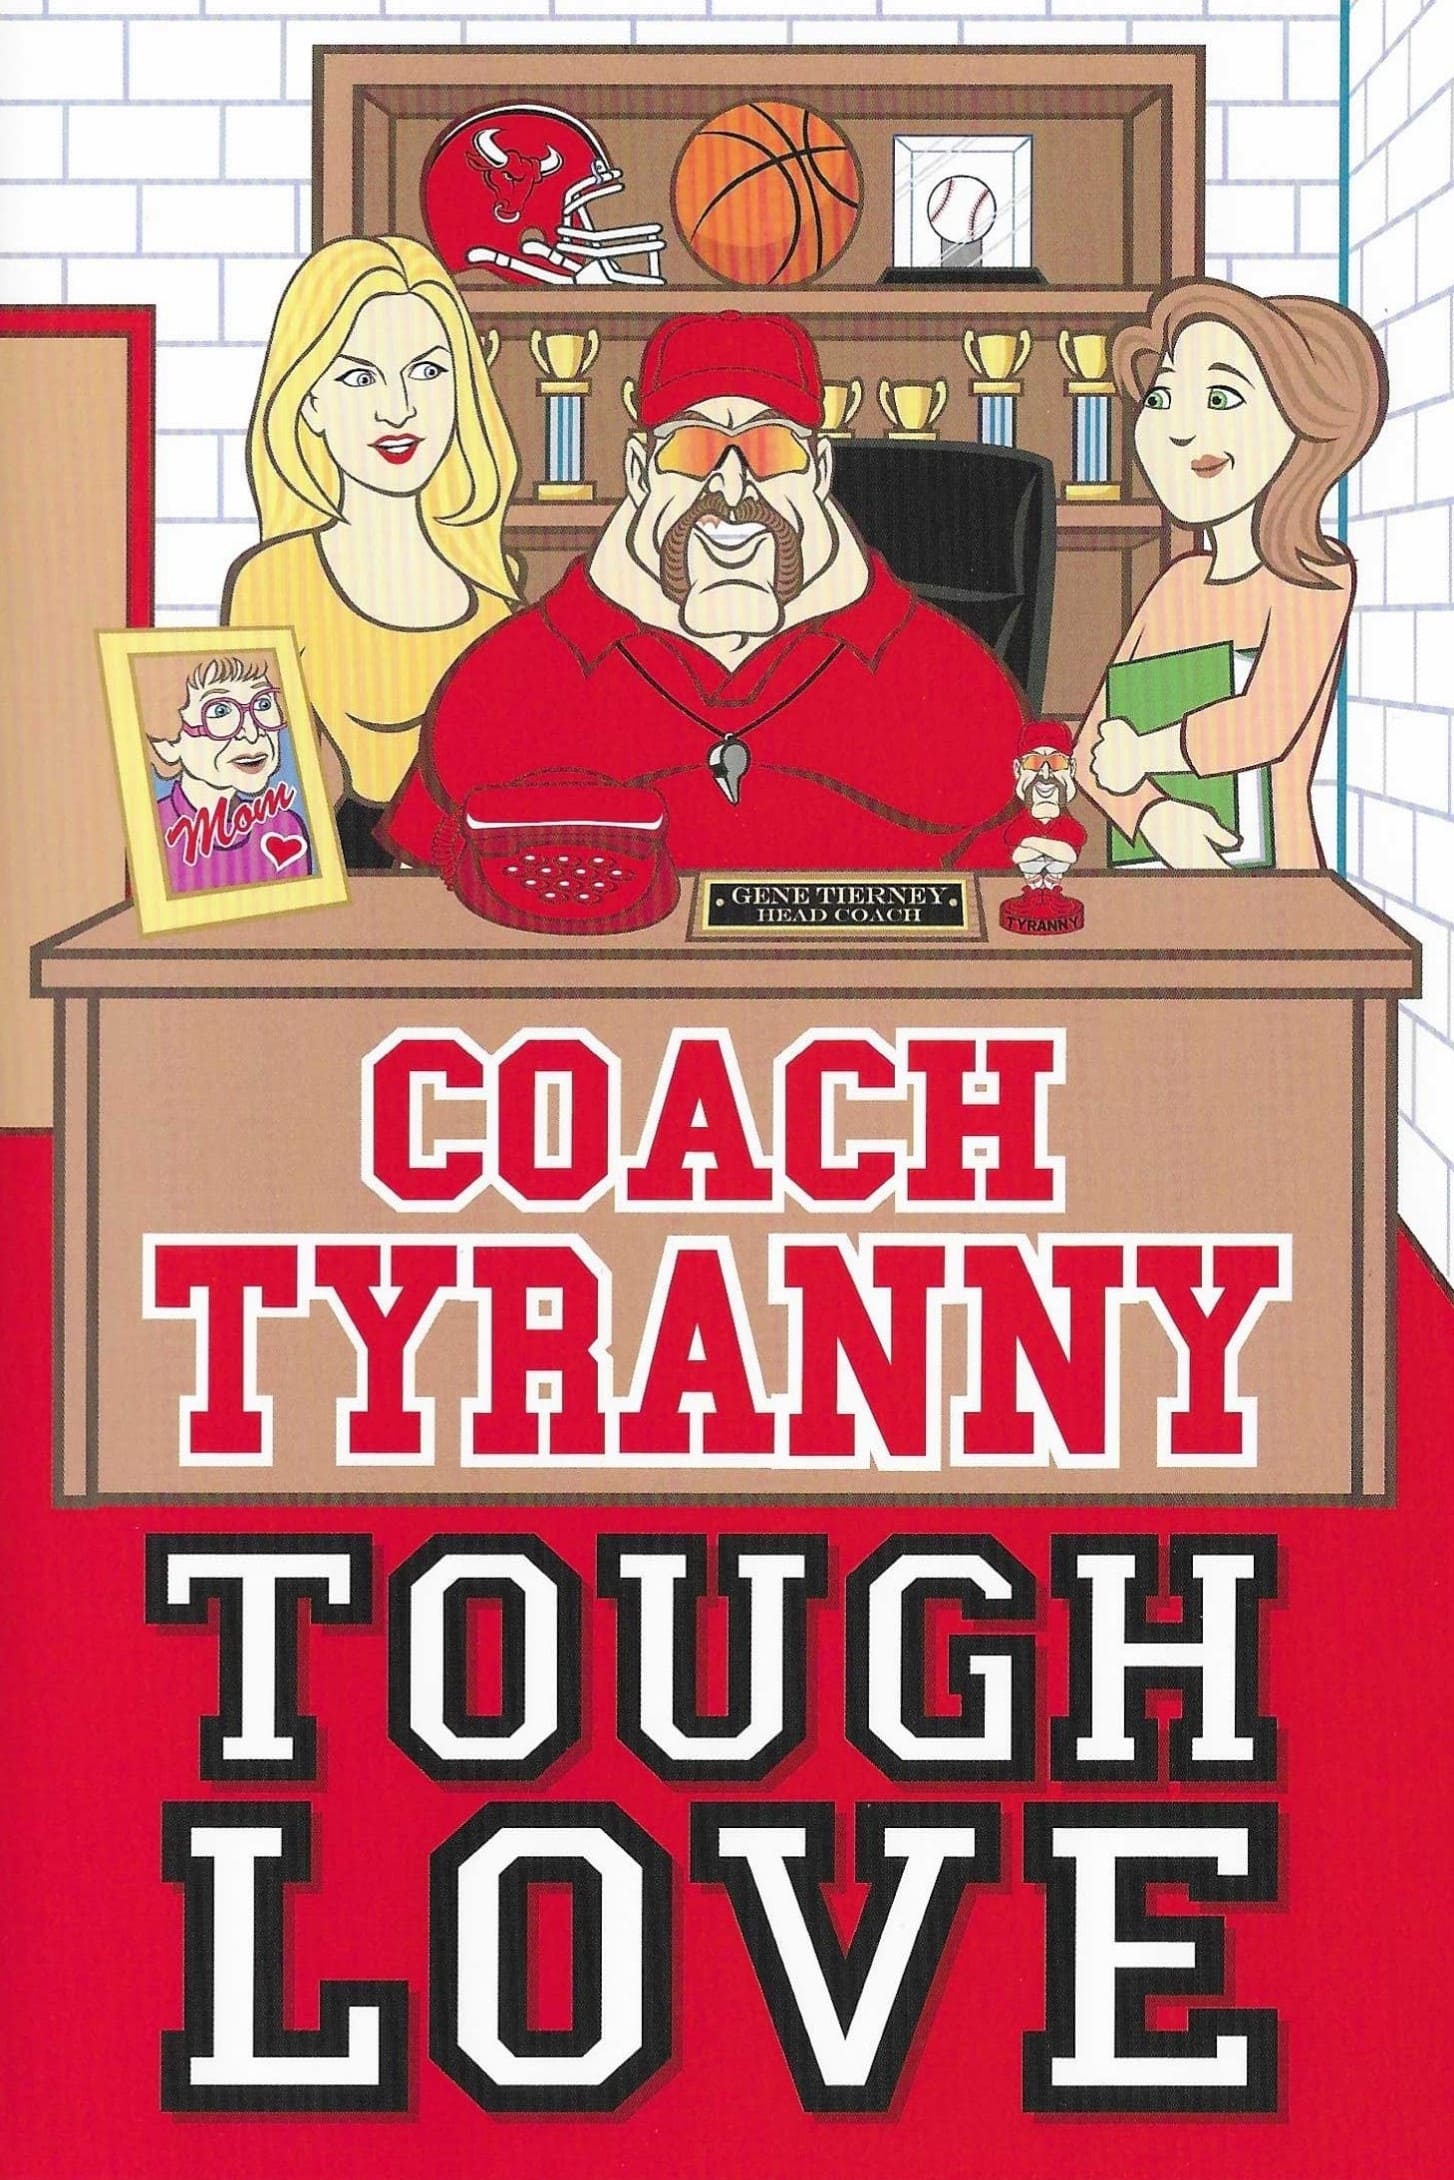 Coach Tyranny: Tough Love